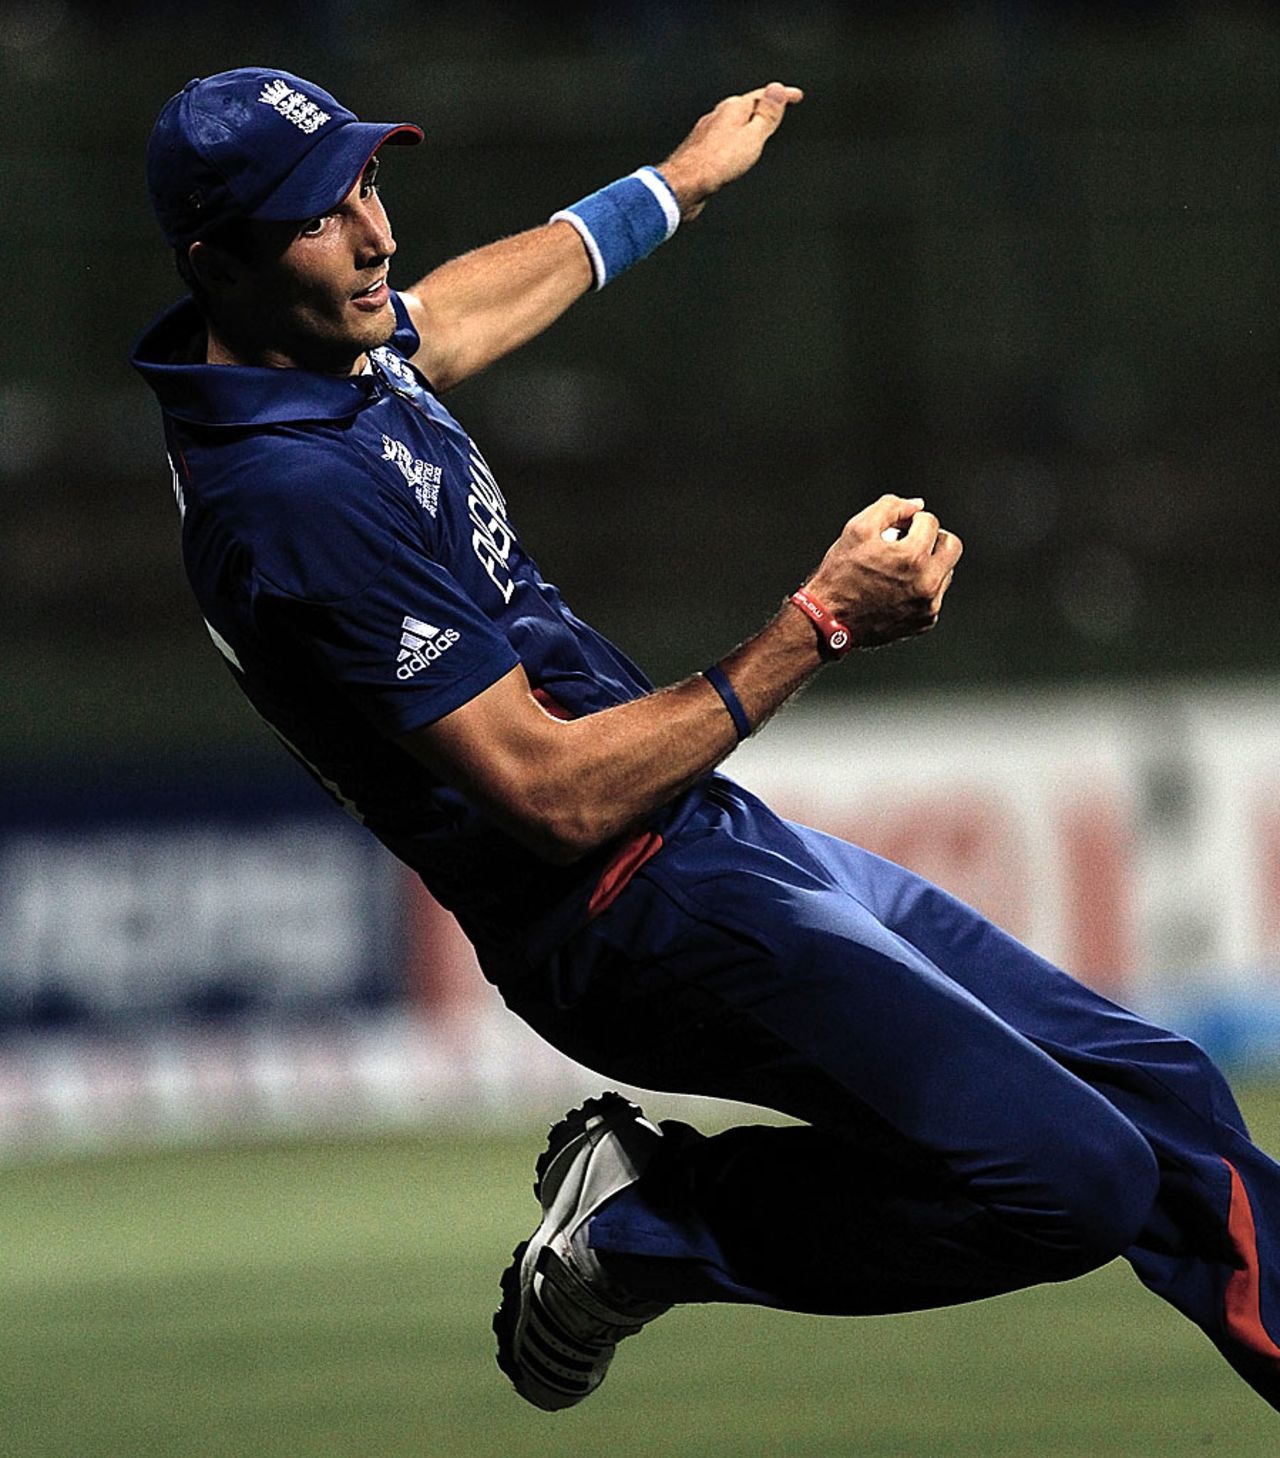 Steven Finn falls backwards as he catches Chris Gayle, England v West Indies, World Twenty20 2012, Super Eights, Pallekele, September 27, 2012